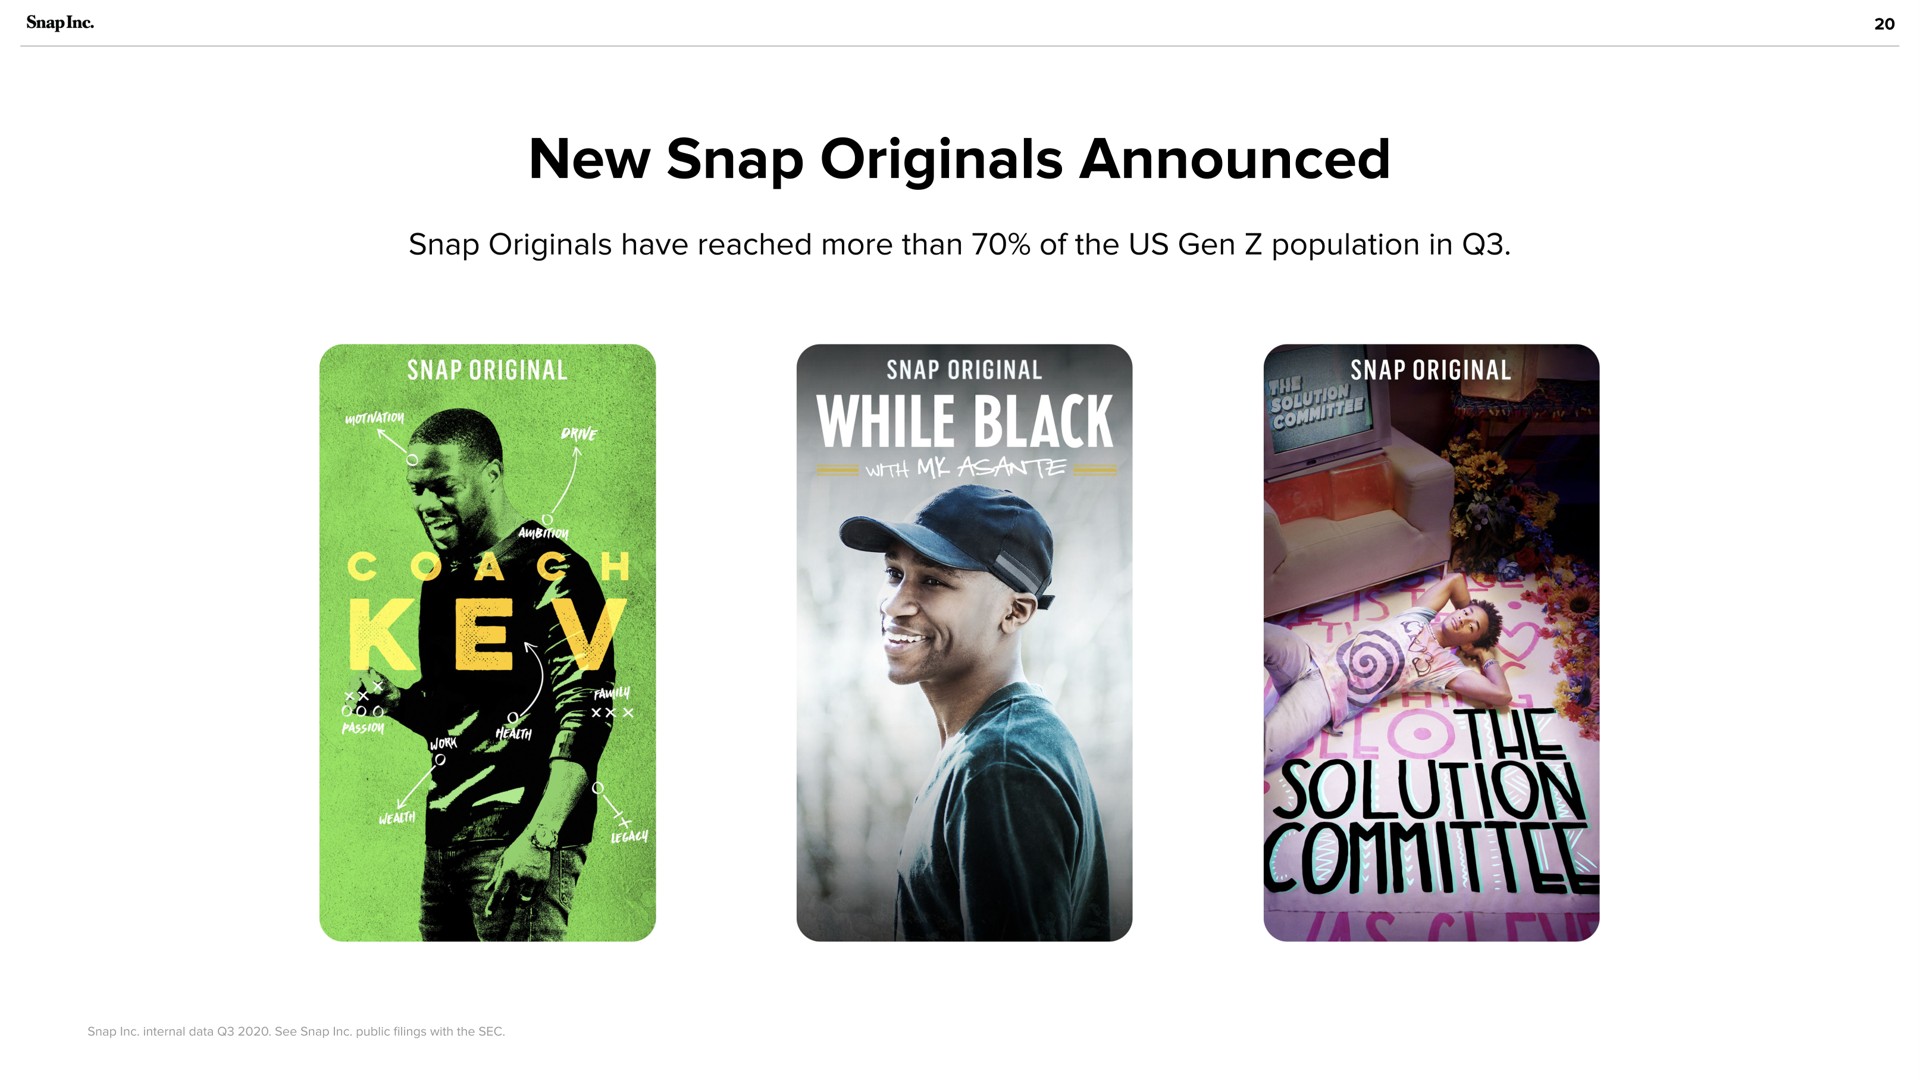 new snap originals announced | Snap Inc